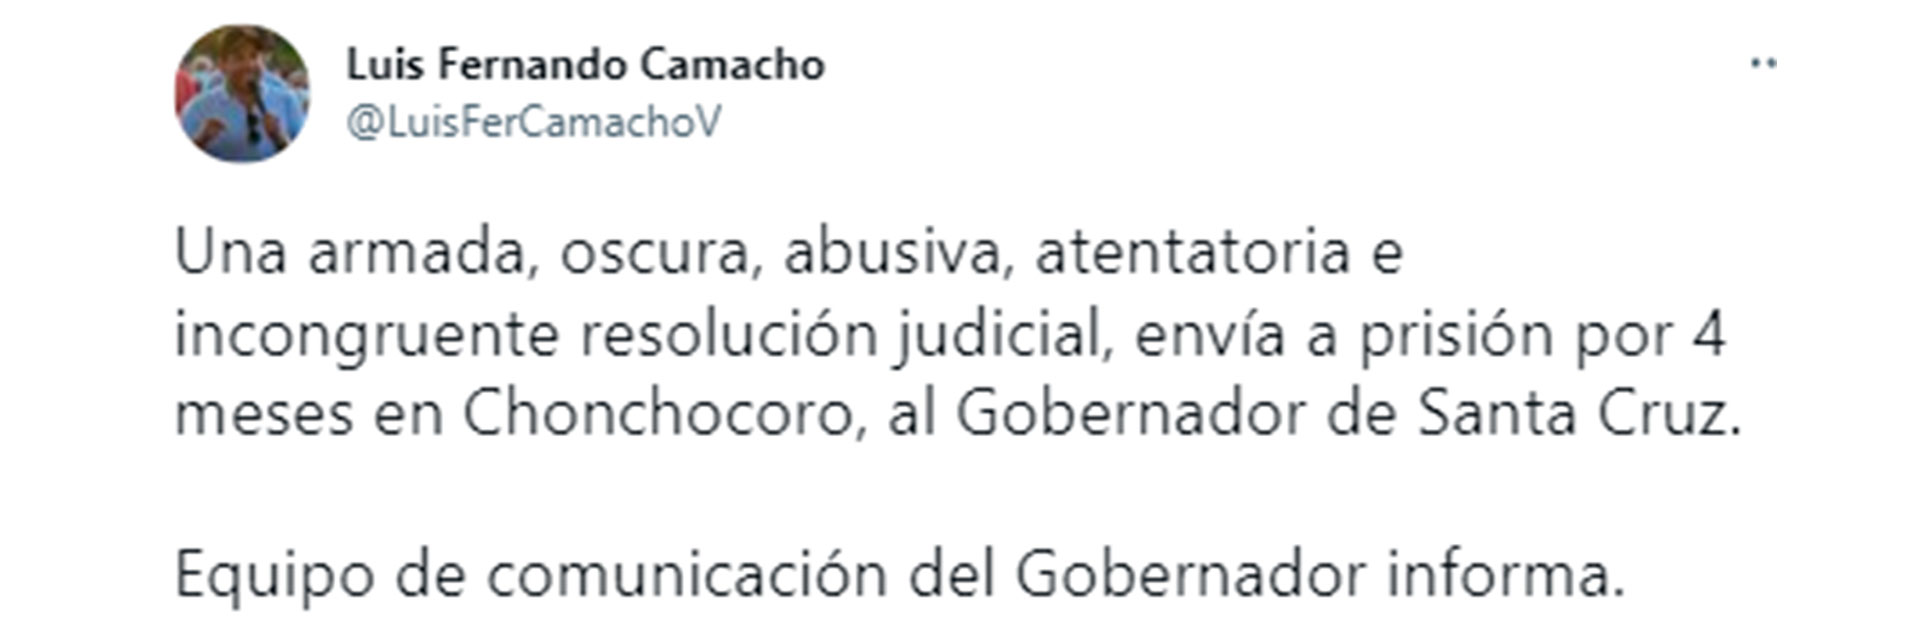 El mensaje del equipo de comunicación de Camacho en la cuenta de Twitter del gobernador de Santa Cruz